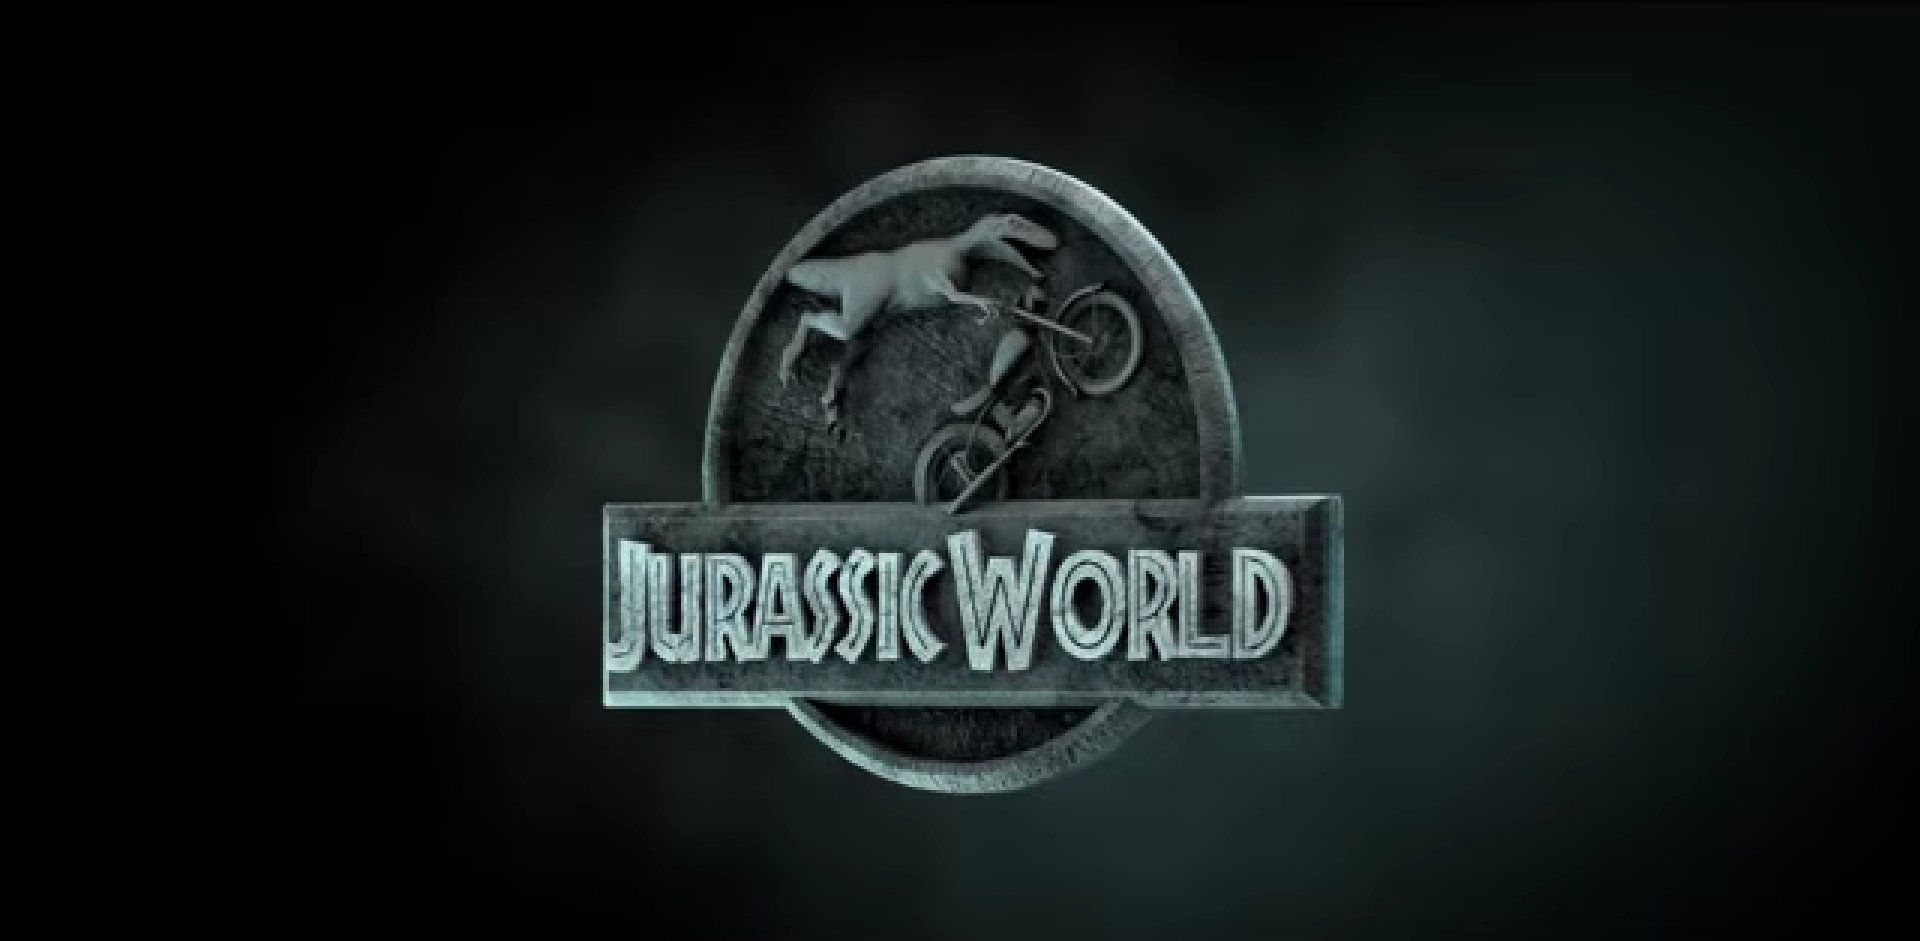 Une parodie hilarante de Jurassic World avec des dinosaures à motos #2